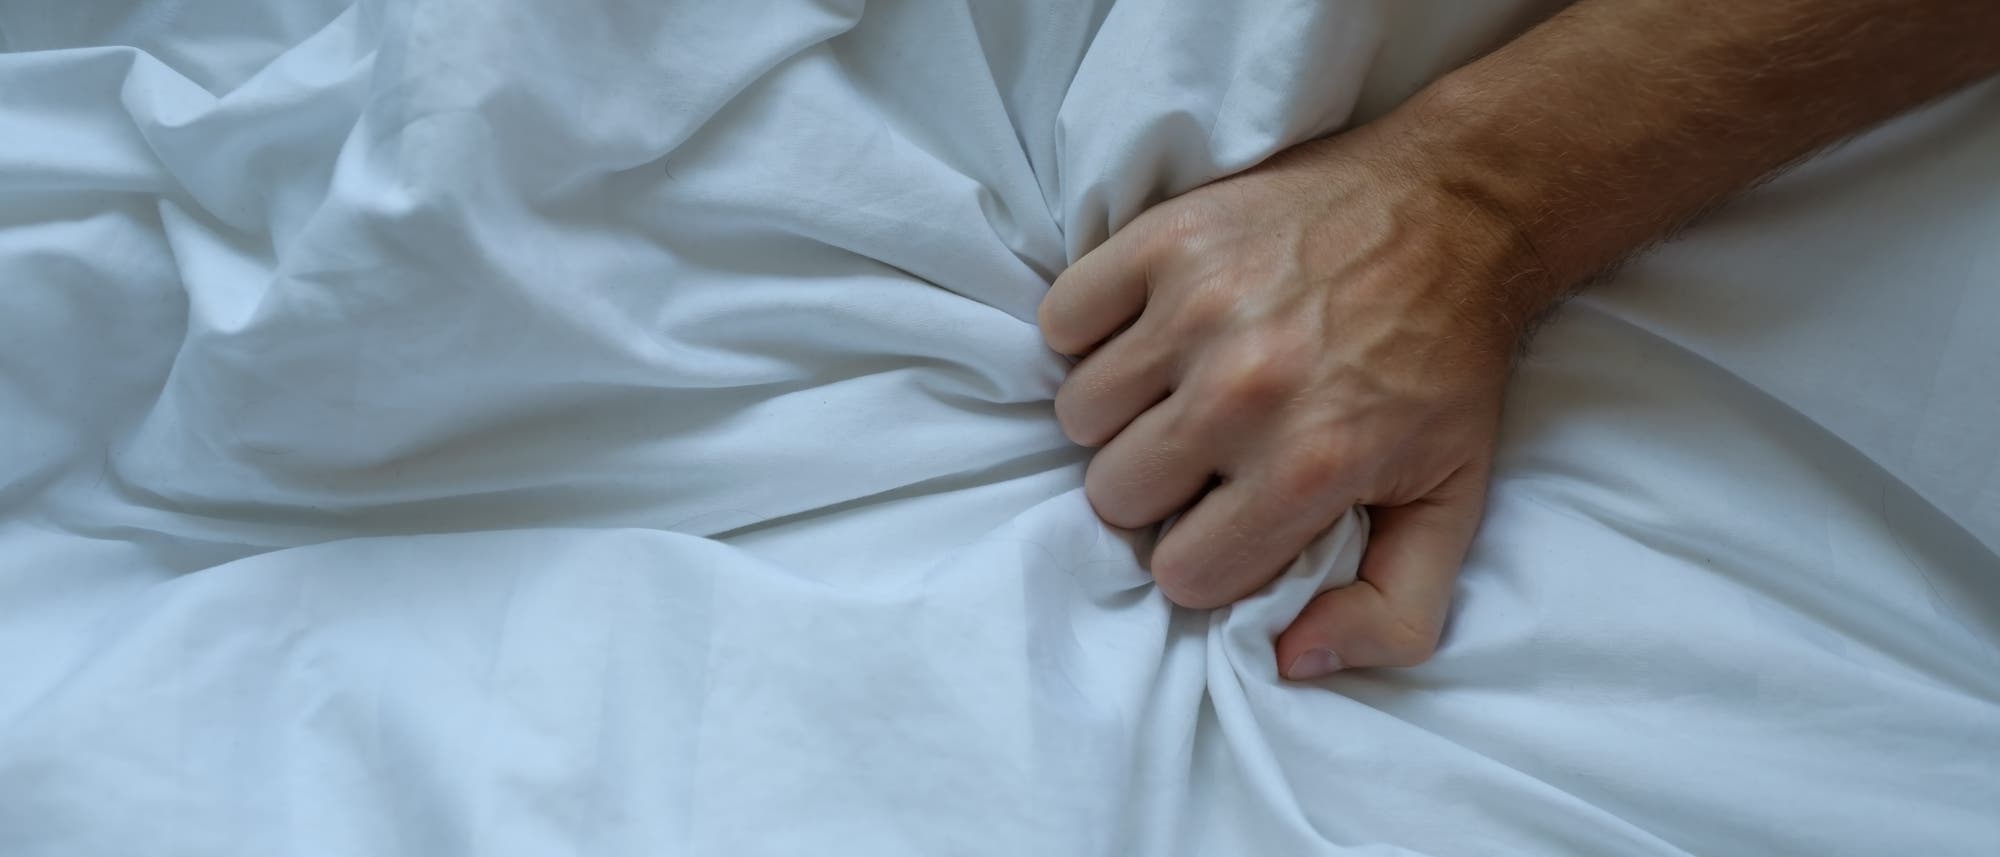 Männliche Hand krallt sich ins weiße Bettlaken